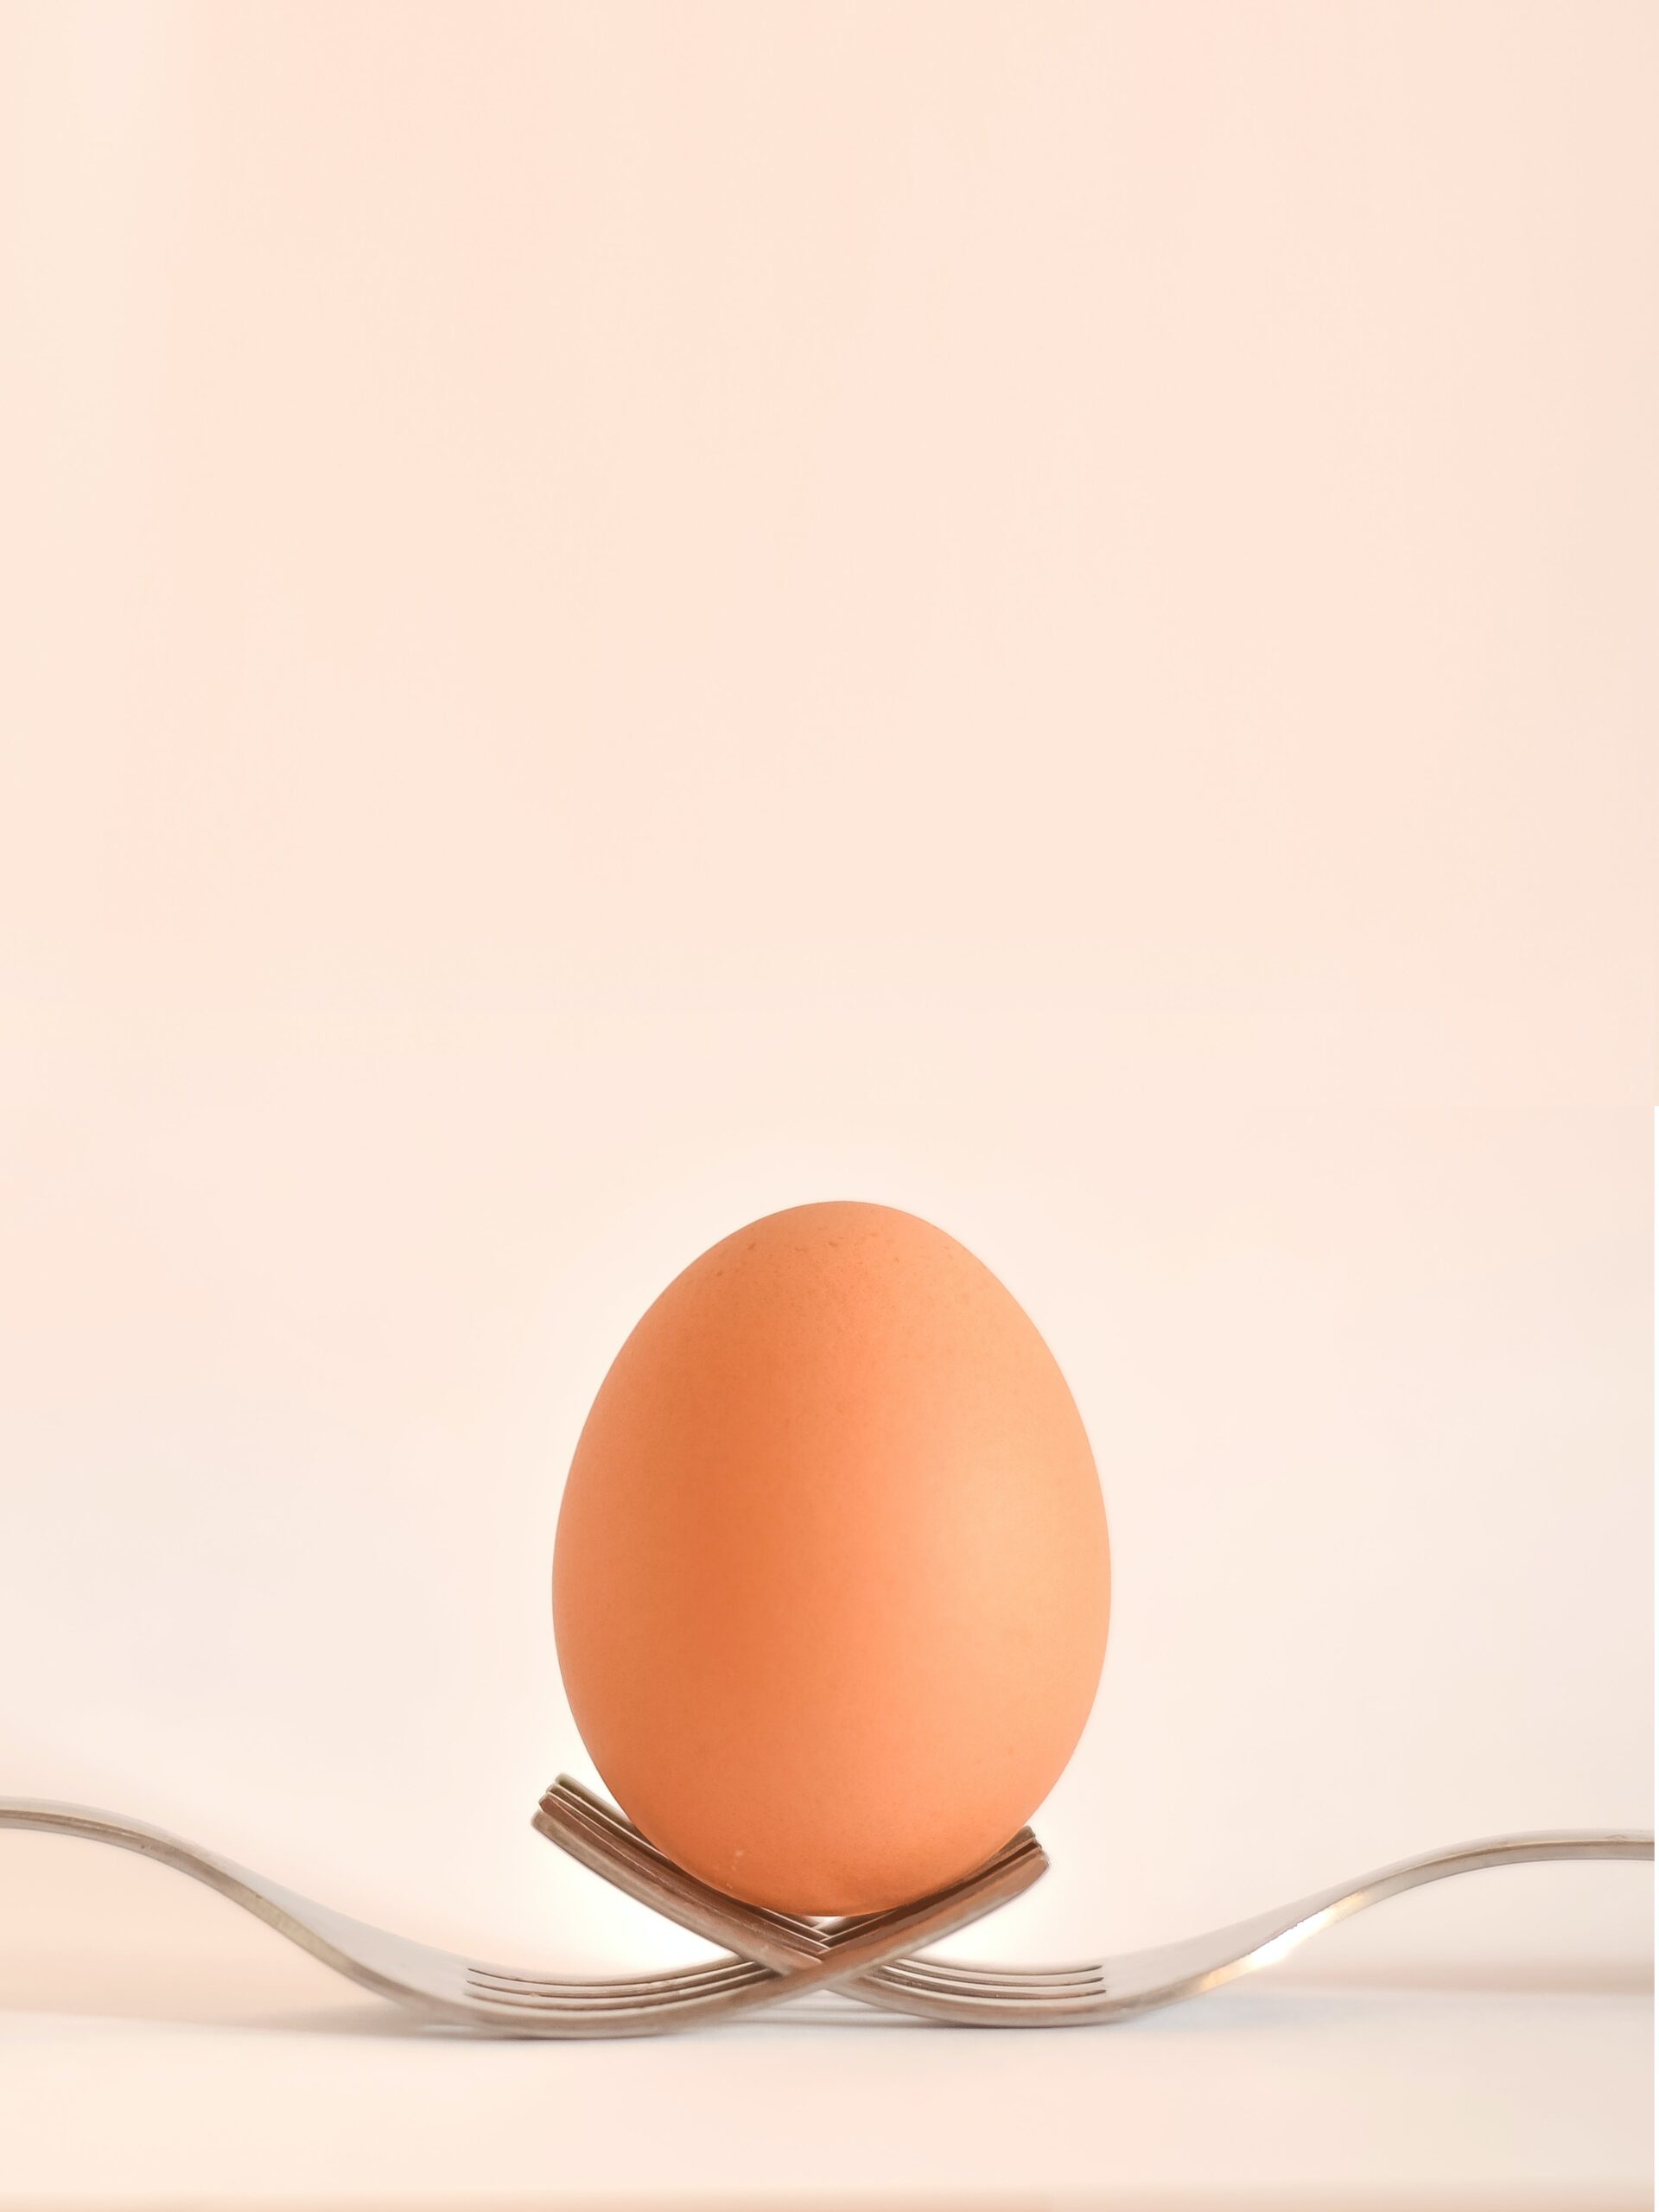 Nutrición. Existen diversos estudios sobre los efectos de comer huevo.